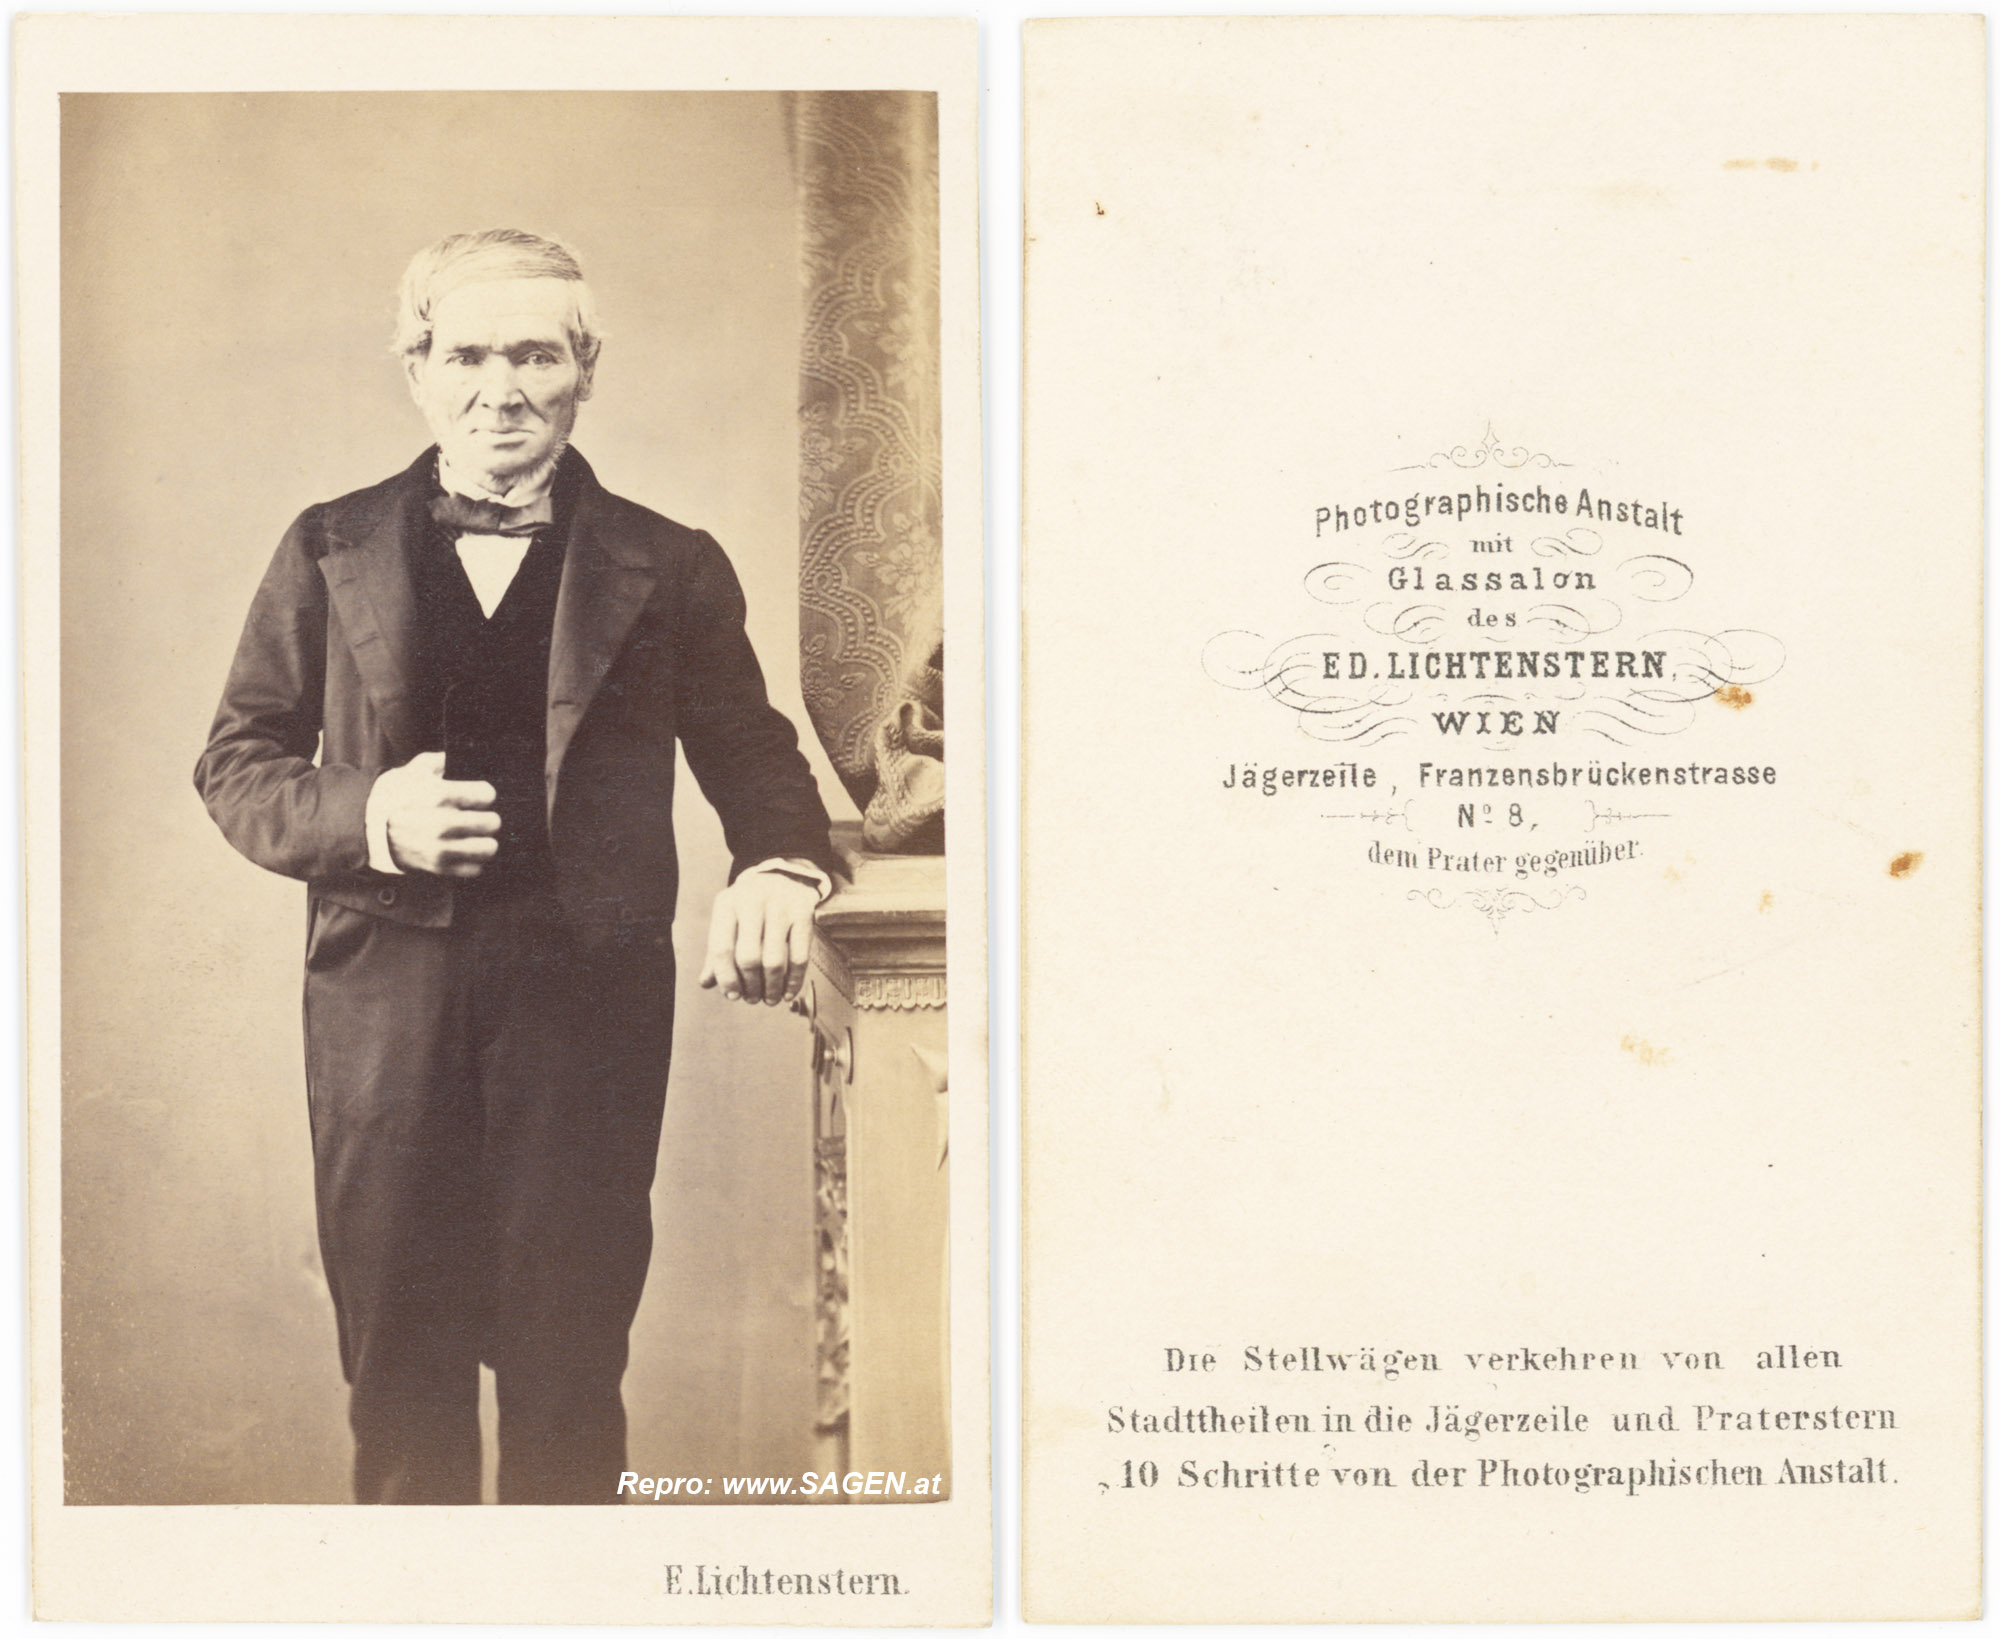 Photographische Anstalt mit Glassalon Ed. Lichtenstern, Wien um 1863